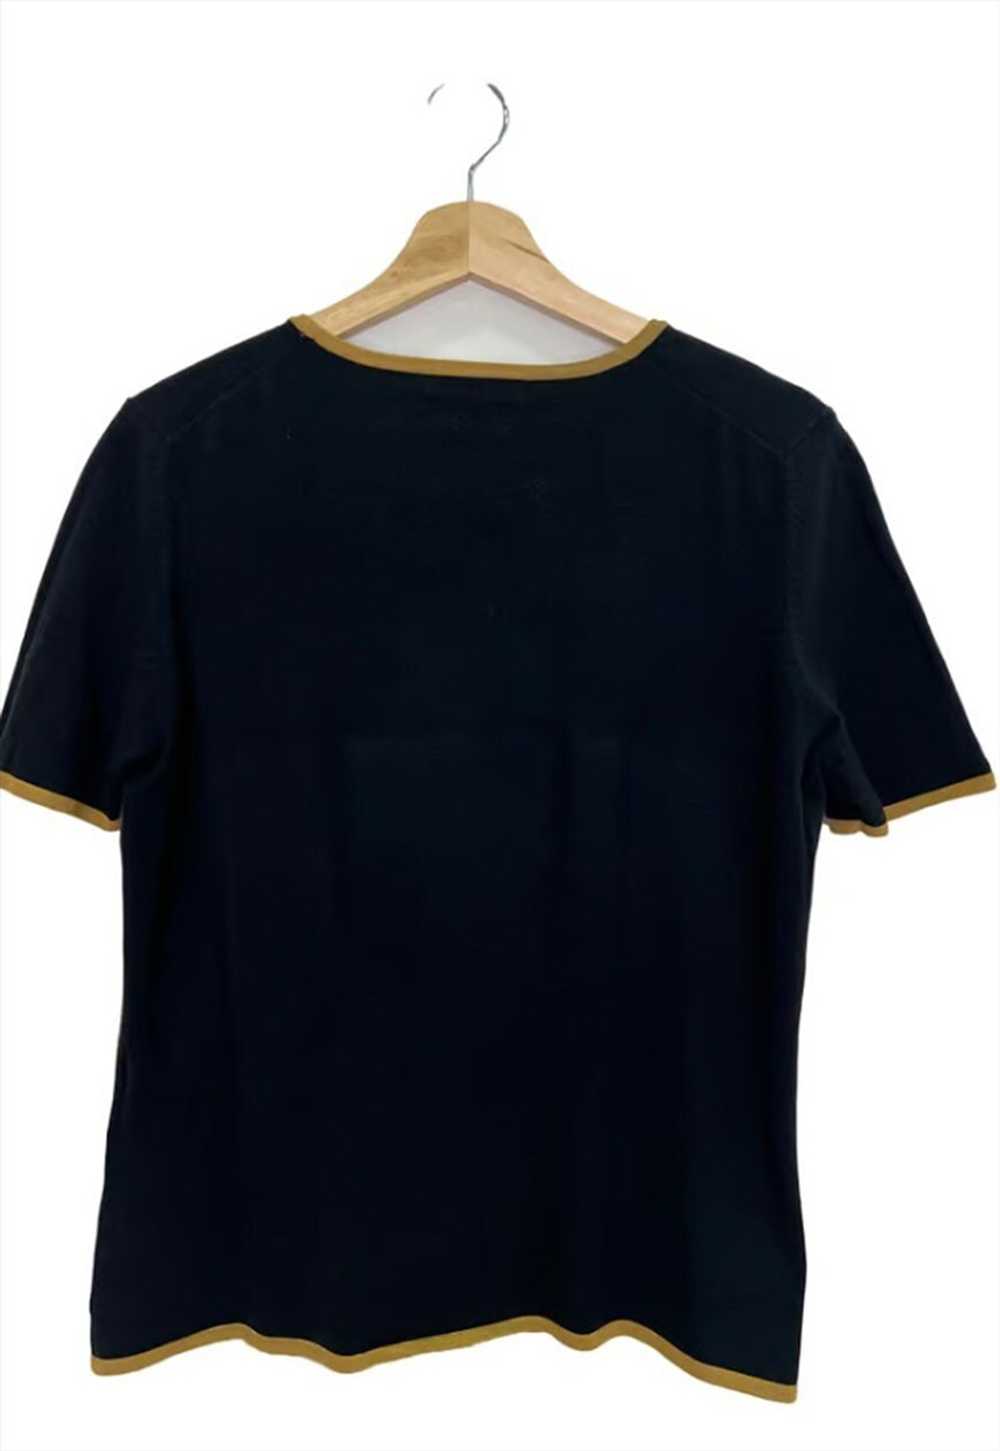 Black vintage Loewe blouse - image 2